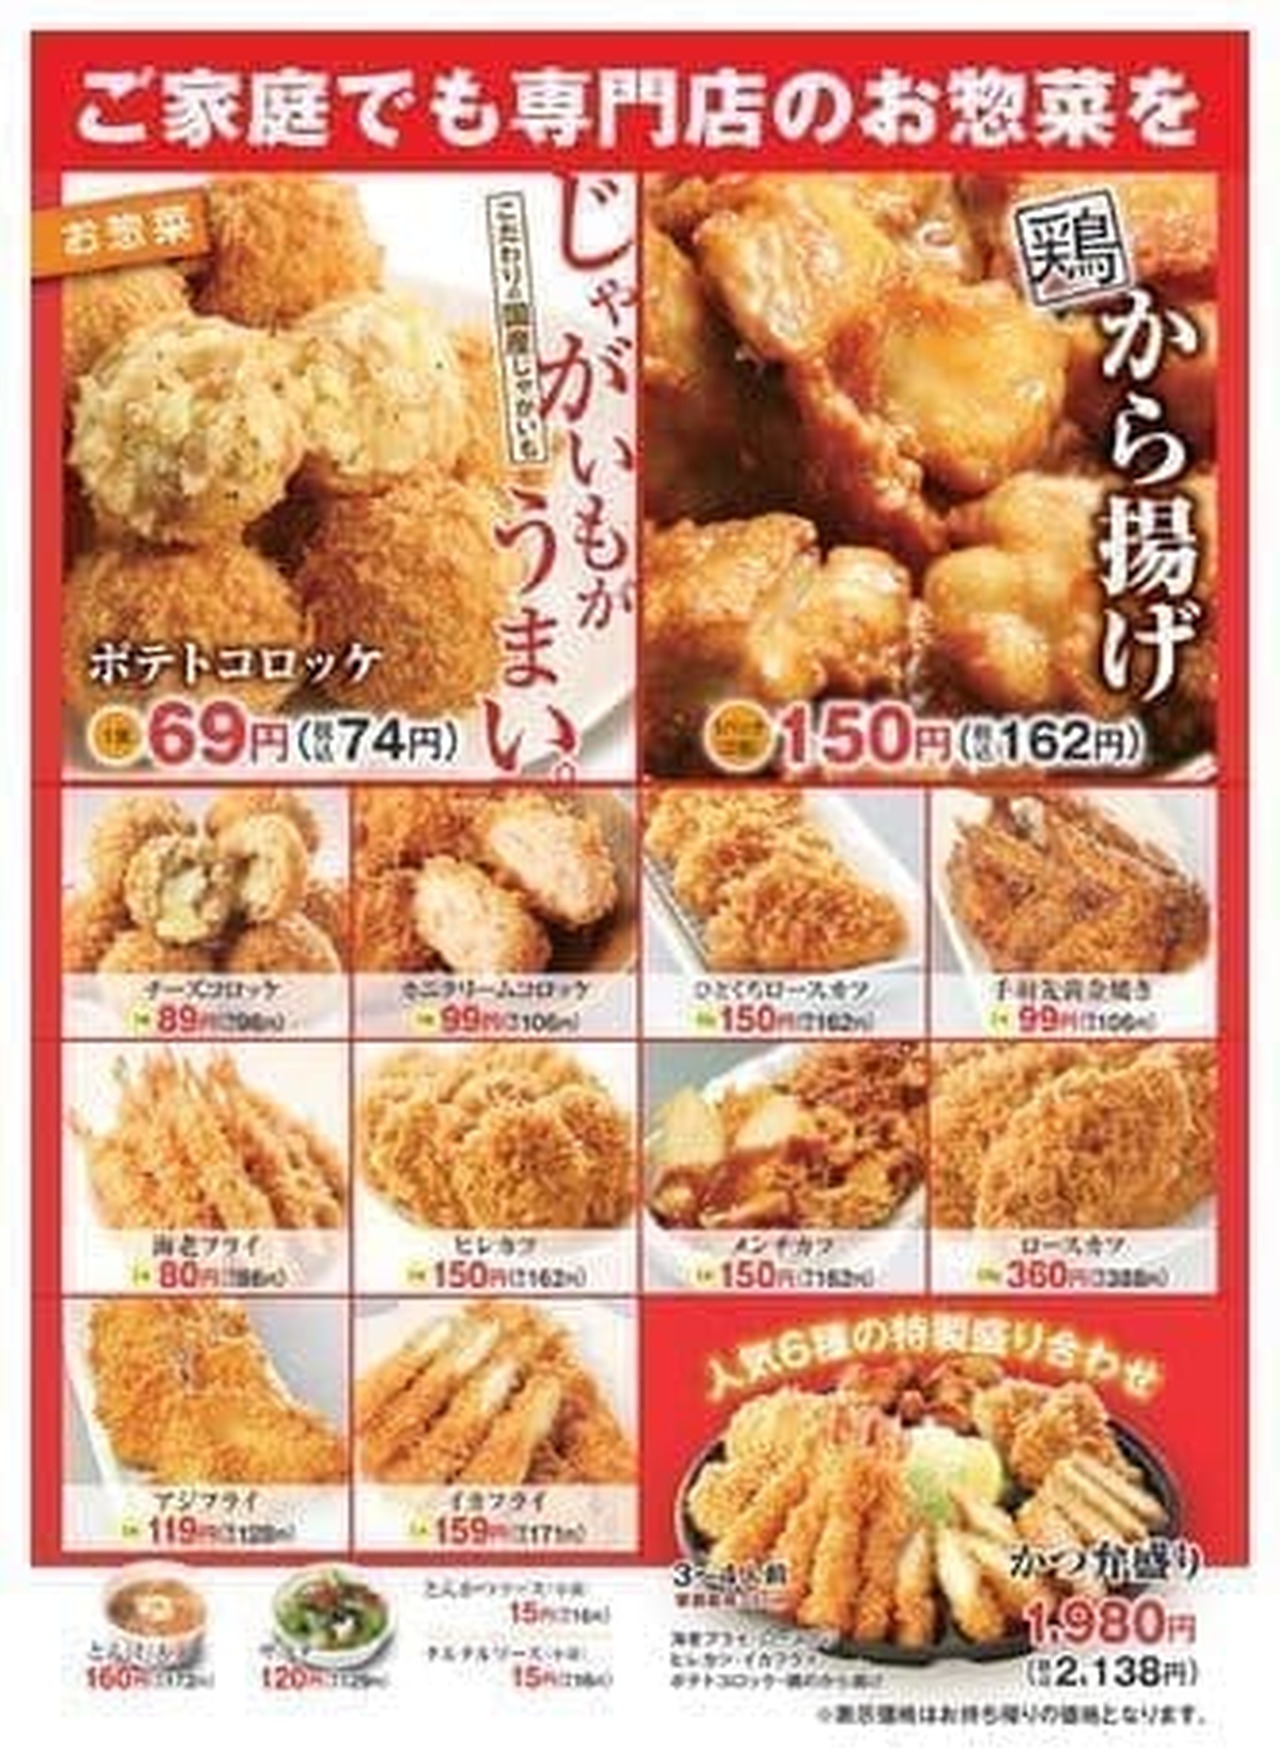 Katsuya's "Katsuben" menu